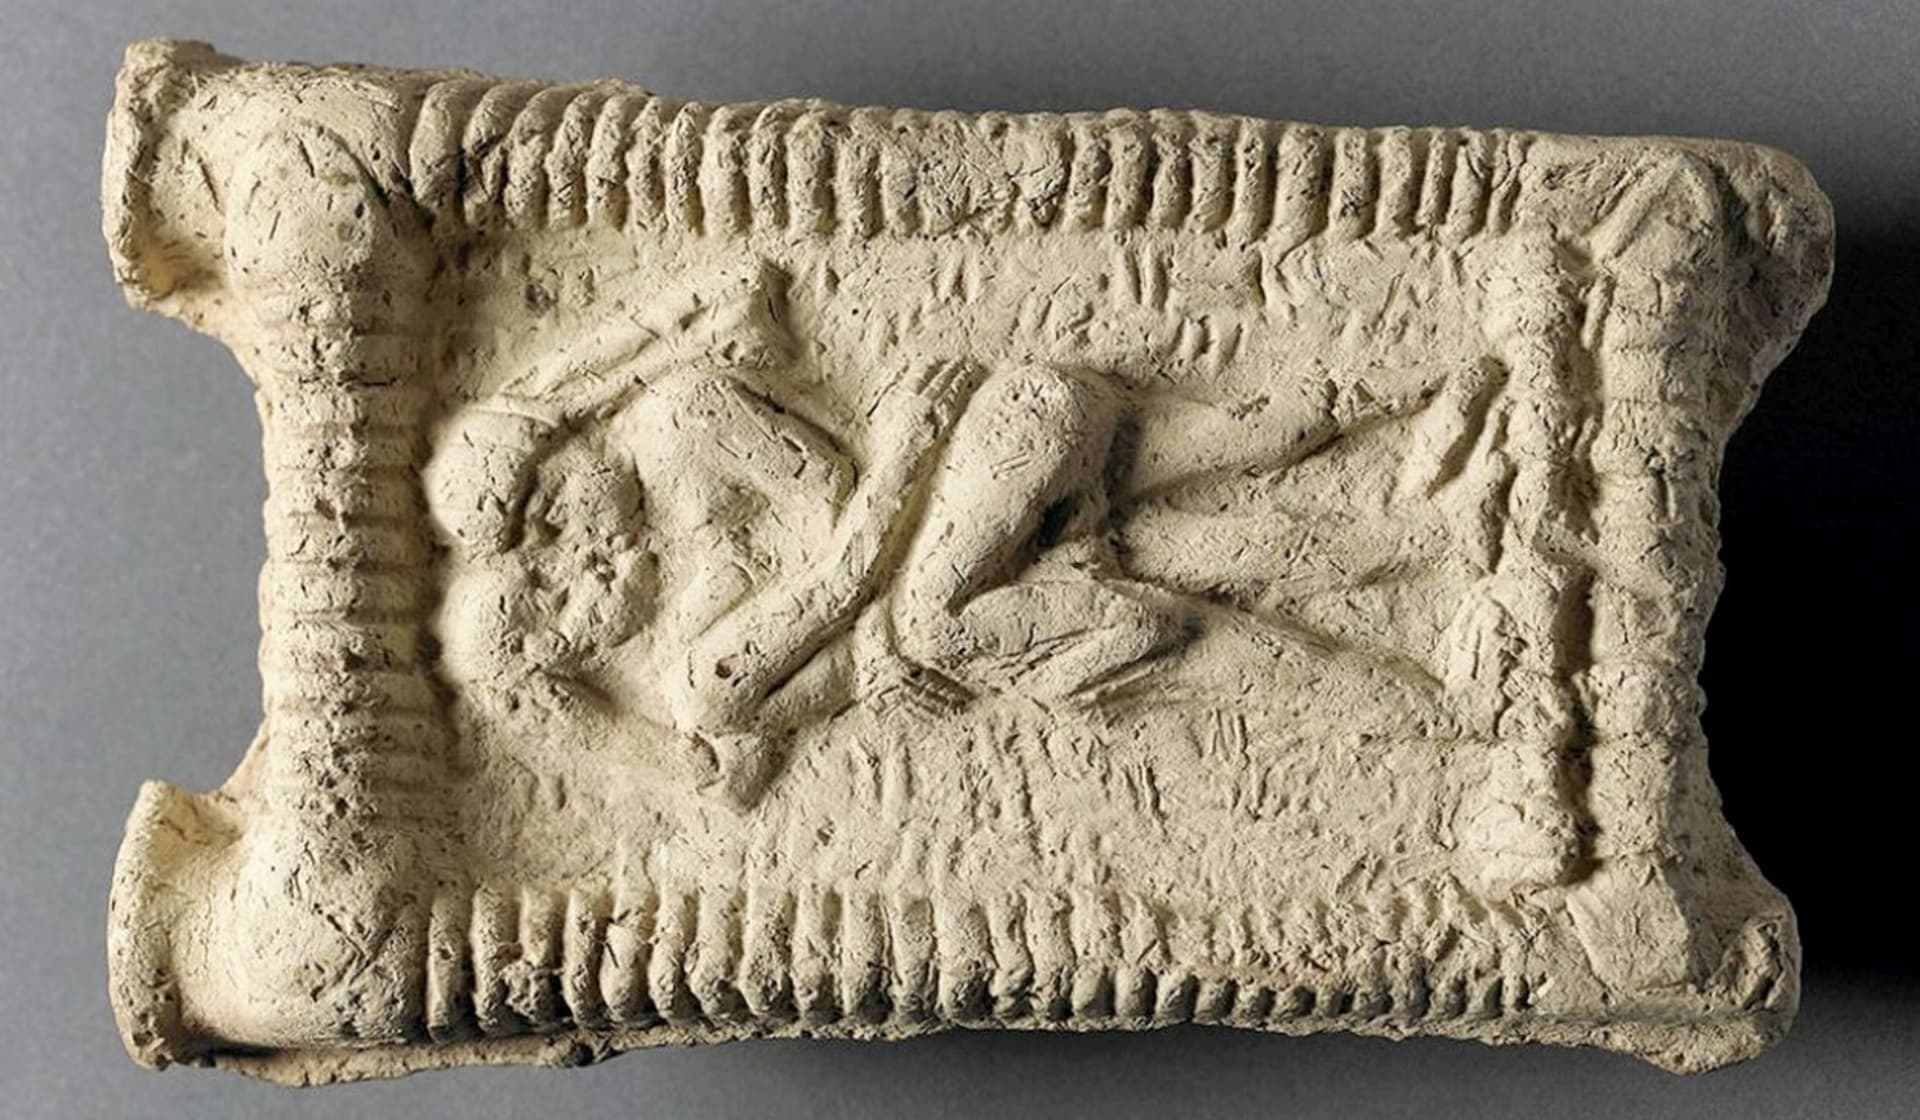 Babylonská hliněná destička znázorňuje líbající se dvojici. Datováno 1800 před naším letopočtem.